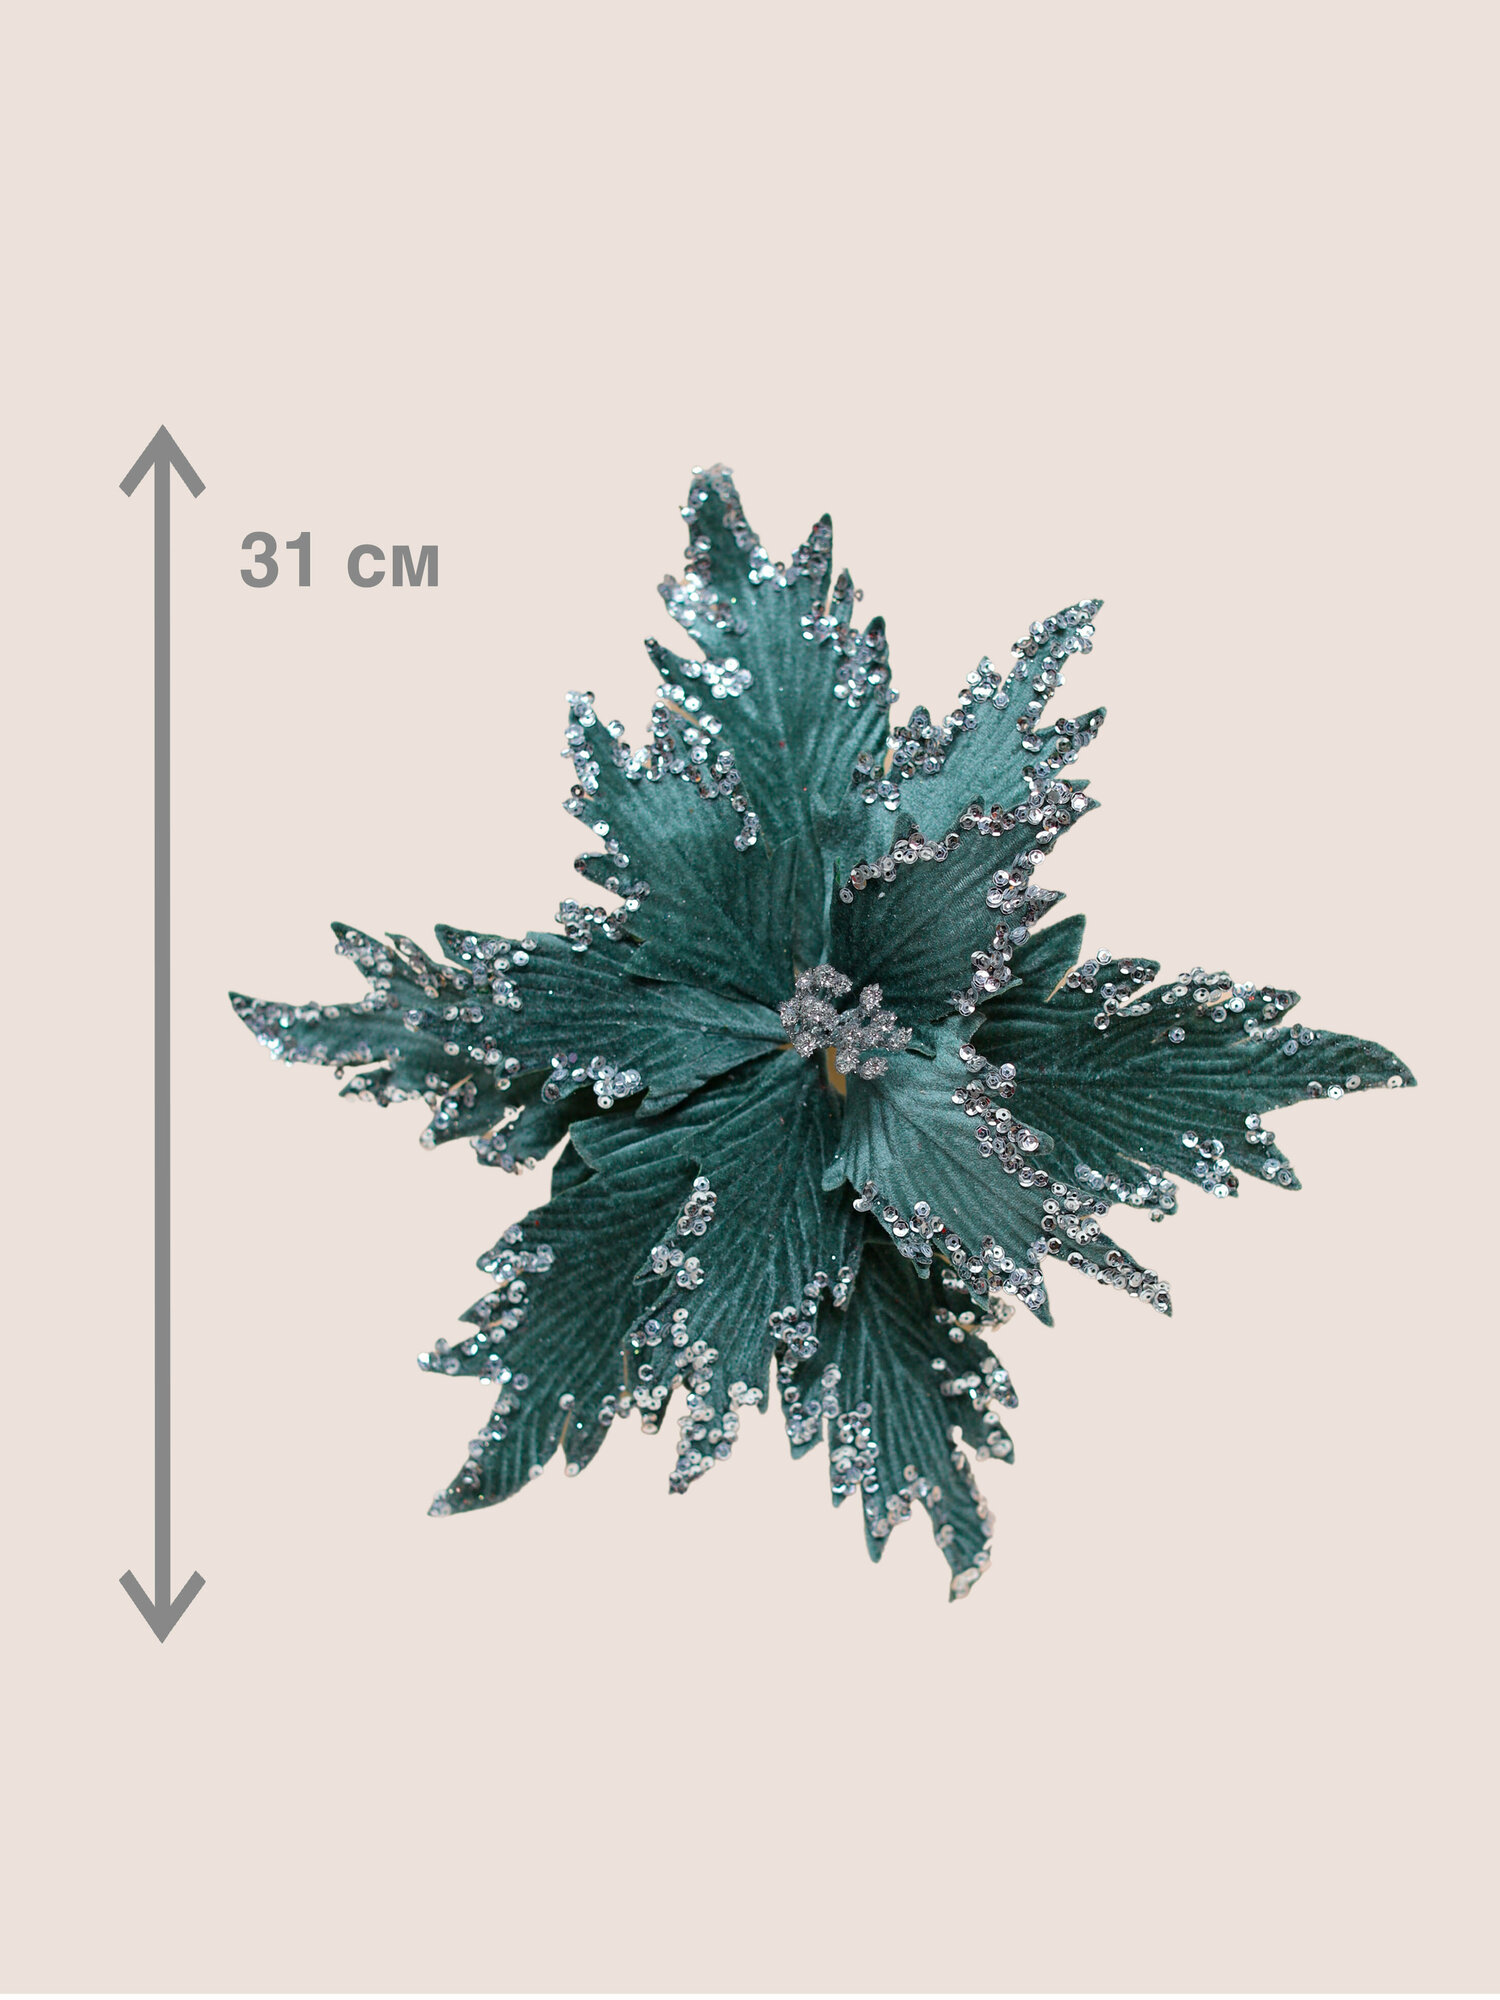 Цветок искусственный декоративный новогодний диаметр 31 см цвет мятно-зеленый